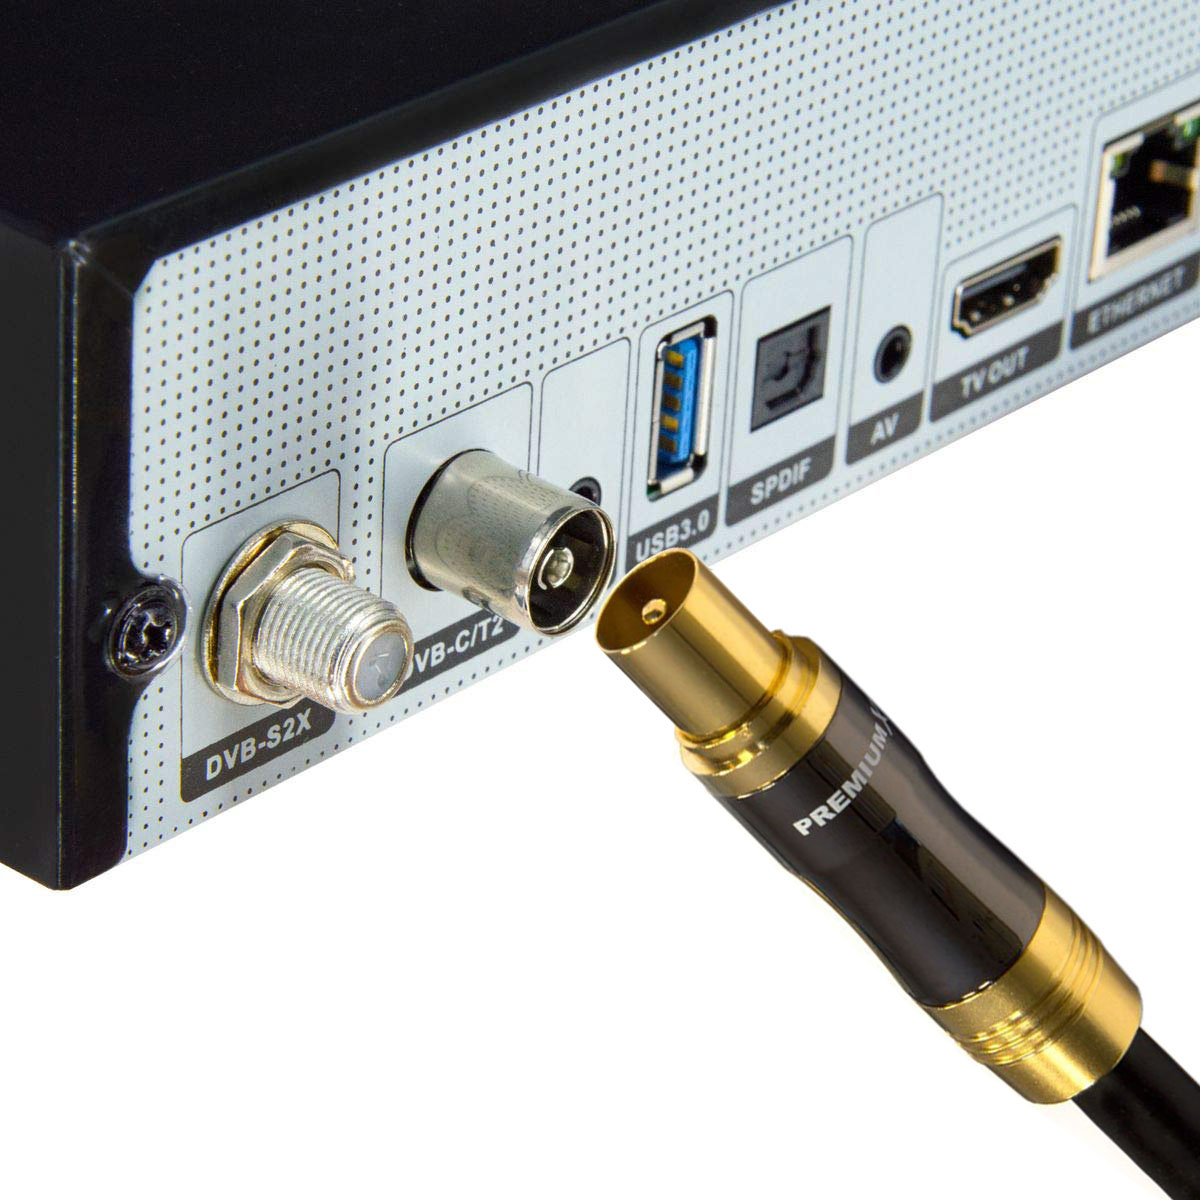 PREMIUMX 1m Gold-Line Antennenkabel - 4K Stecker Schwarz Koax Kupplung HDTV TV IEC-Anschlusskabel Antennenkabel